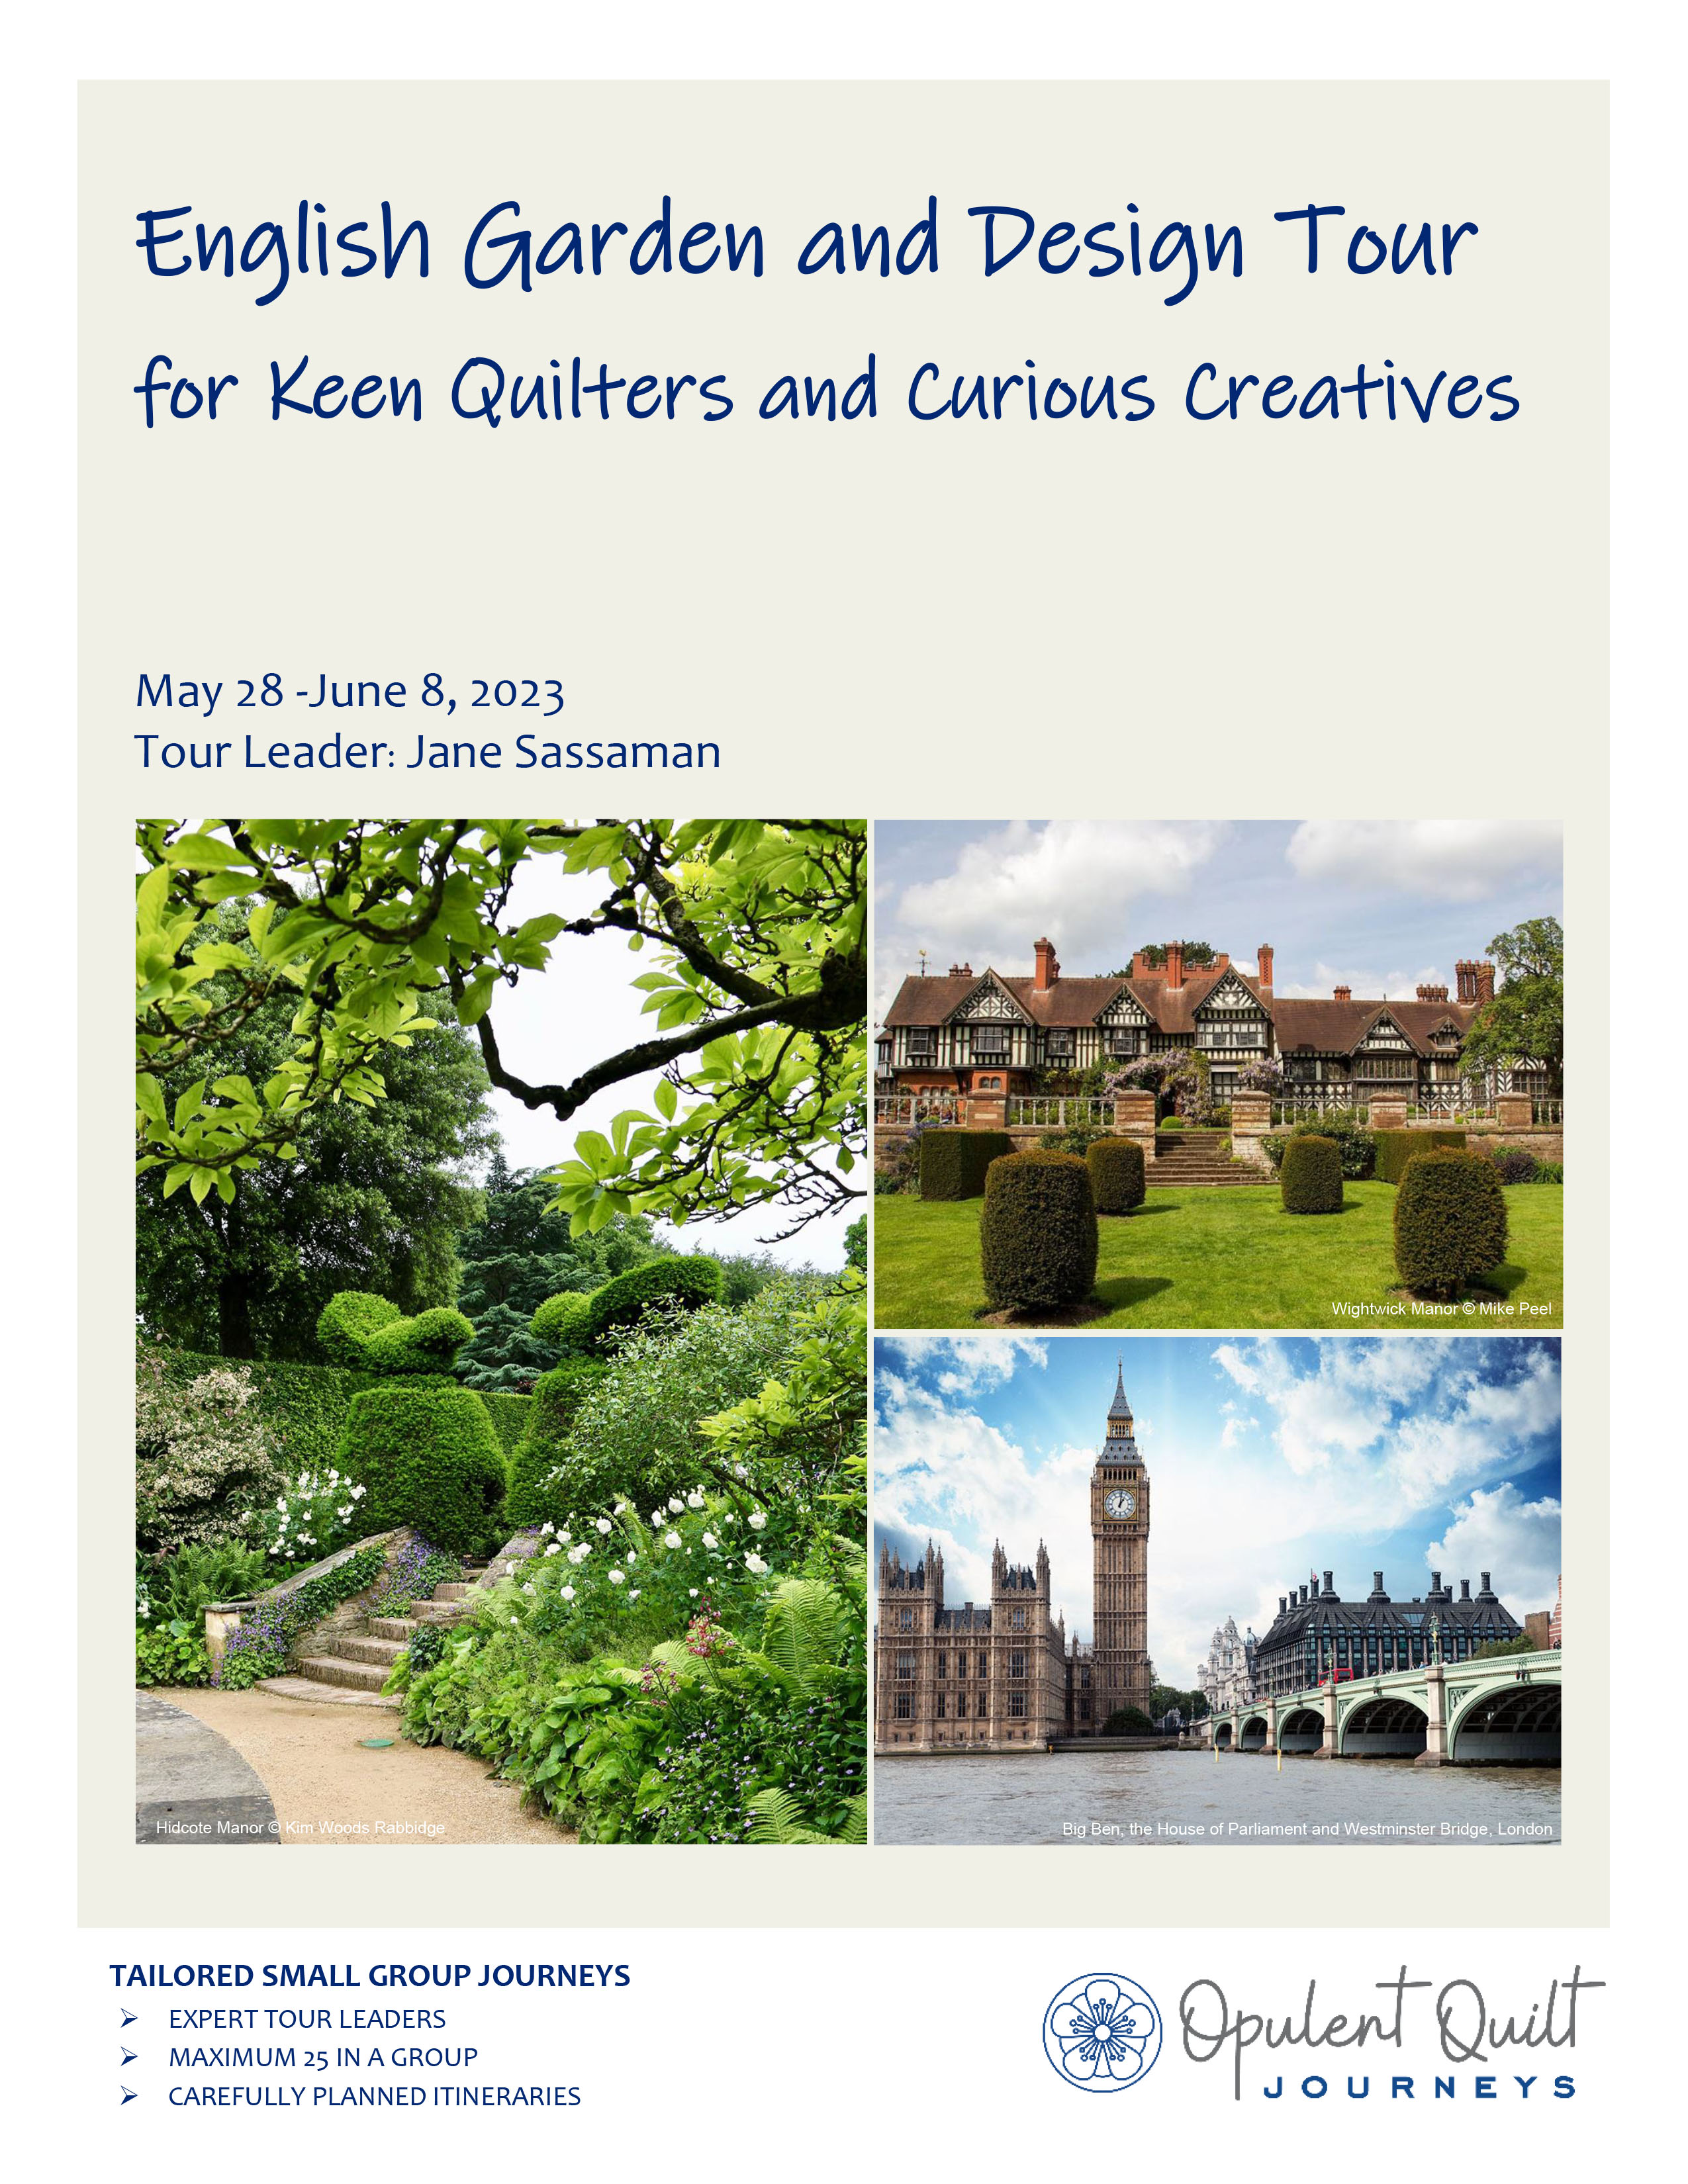 English Garden and Design Tour brochure cover